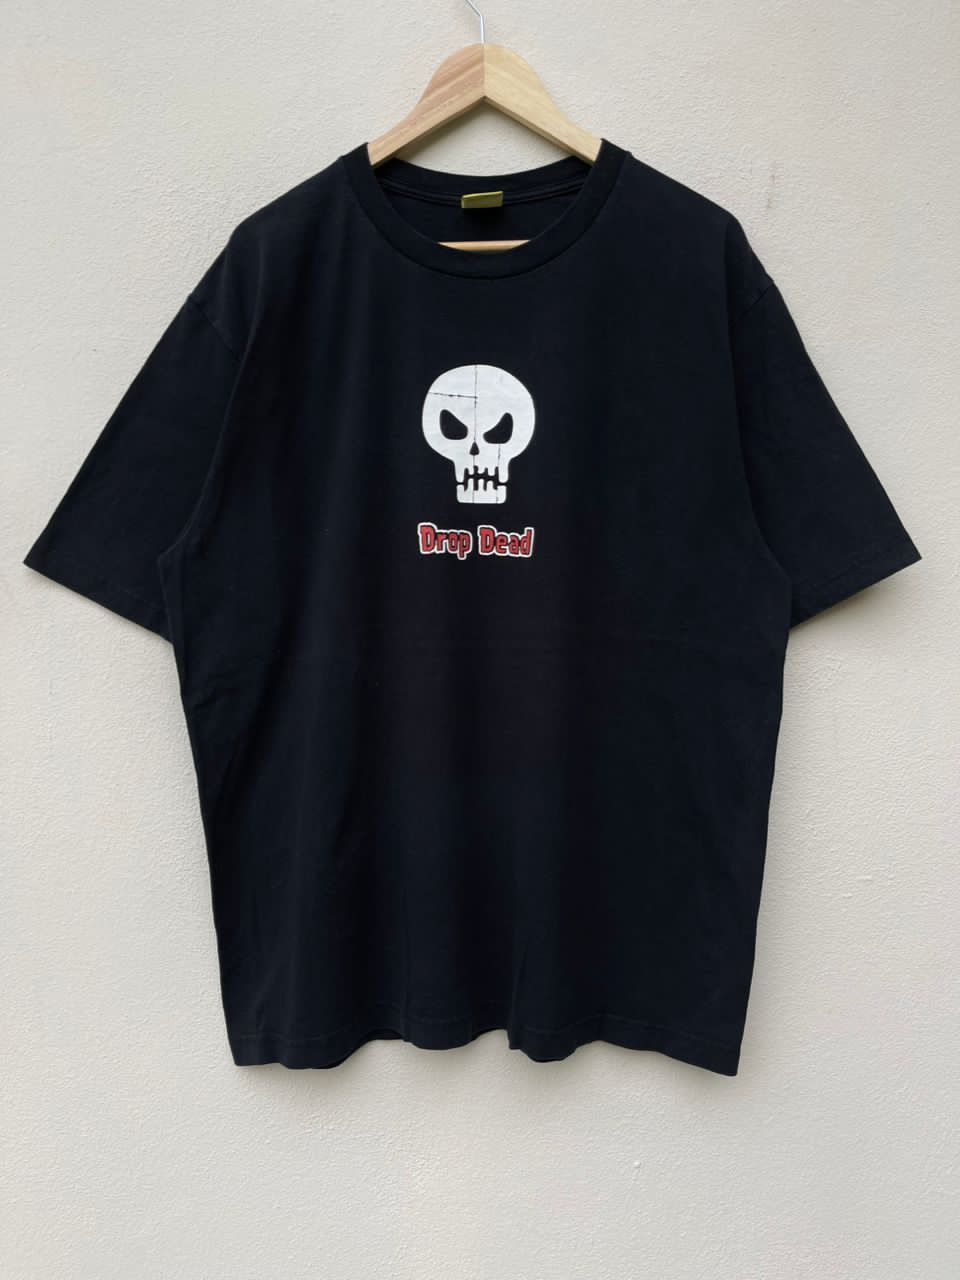 Drop Dead Black T Shirt